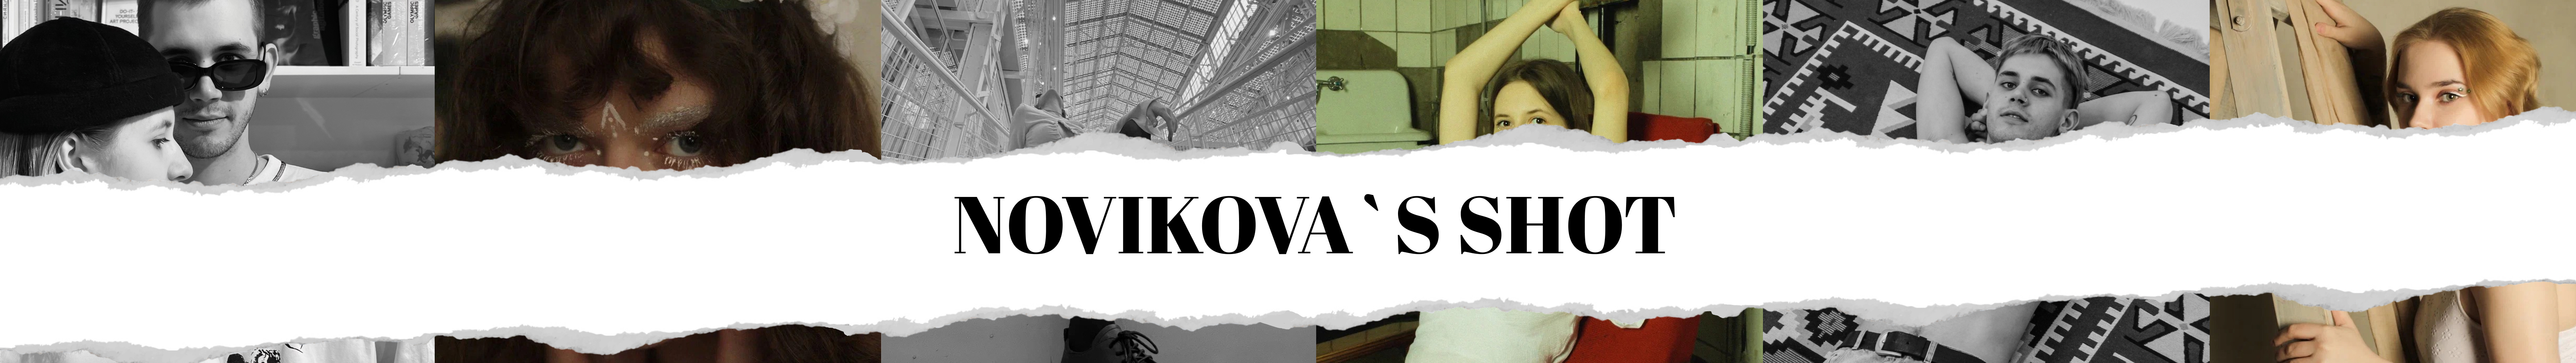 NOVIKOVA SHOOTS's profile banner